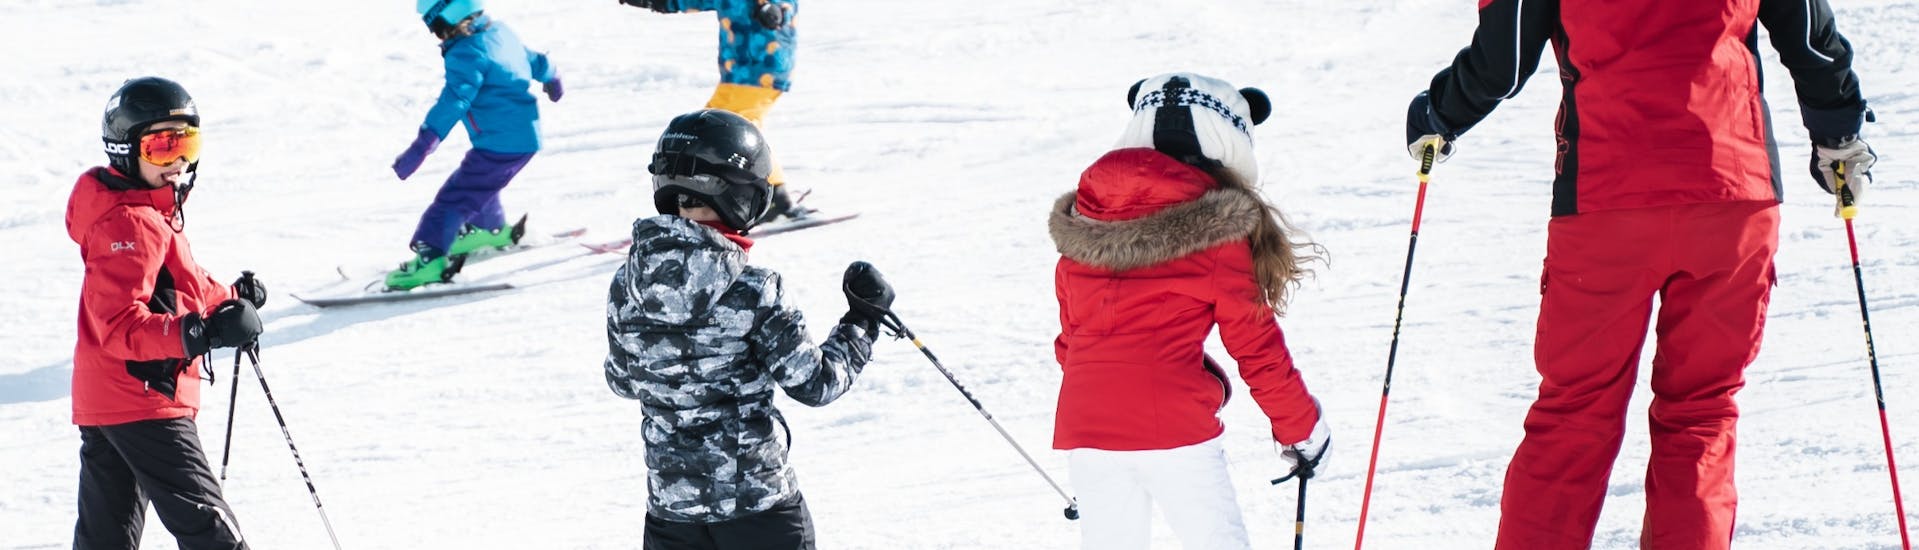 Skilessen voor kinderen voor beginners (4-16 jaar).